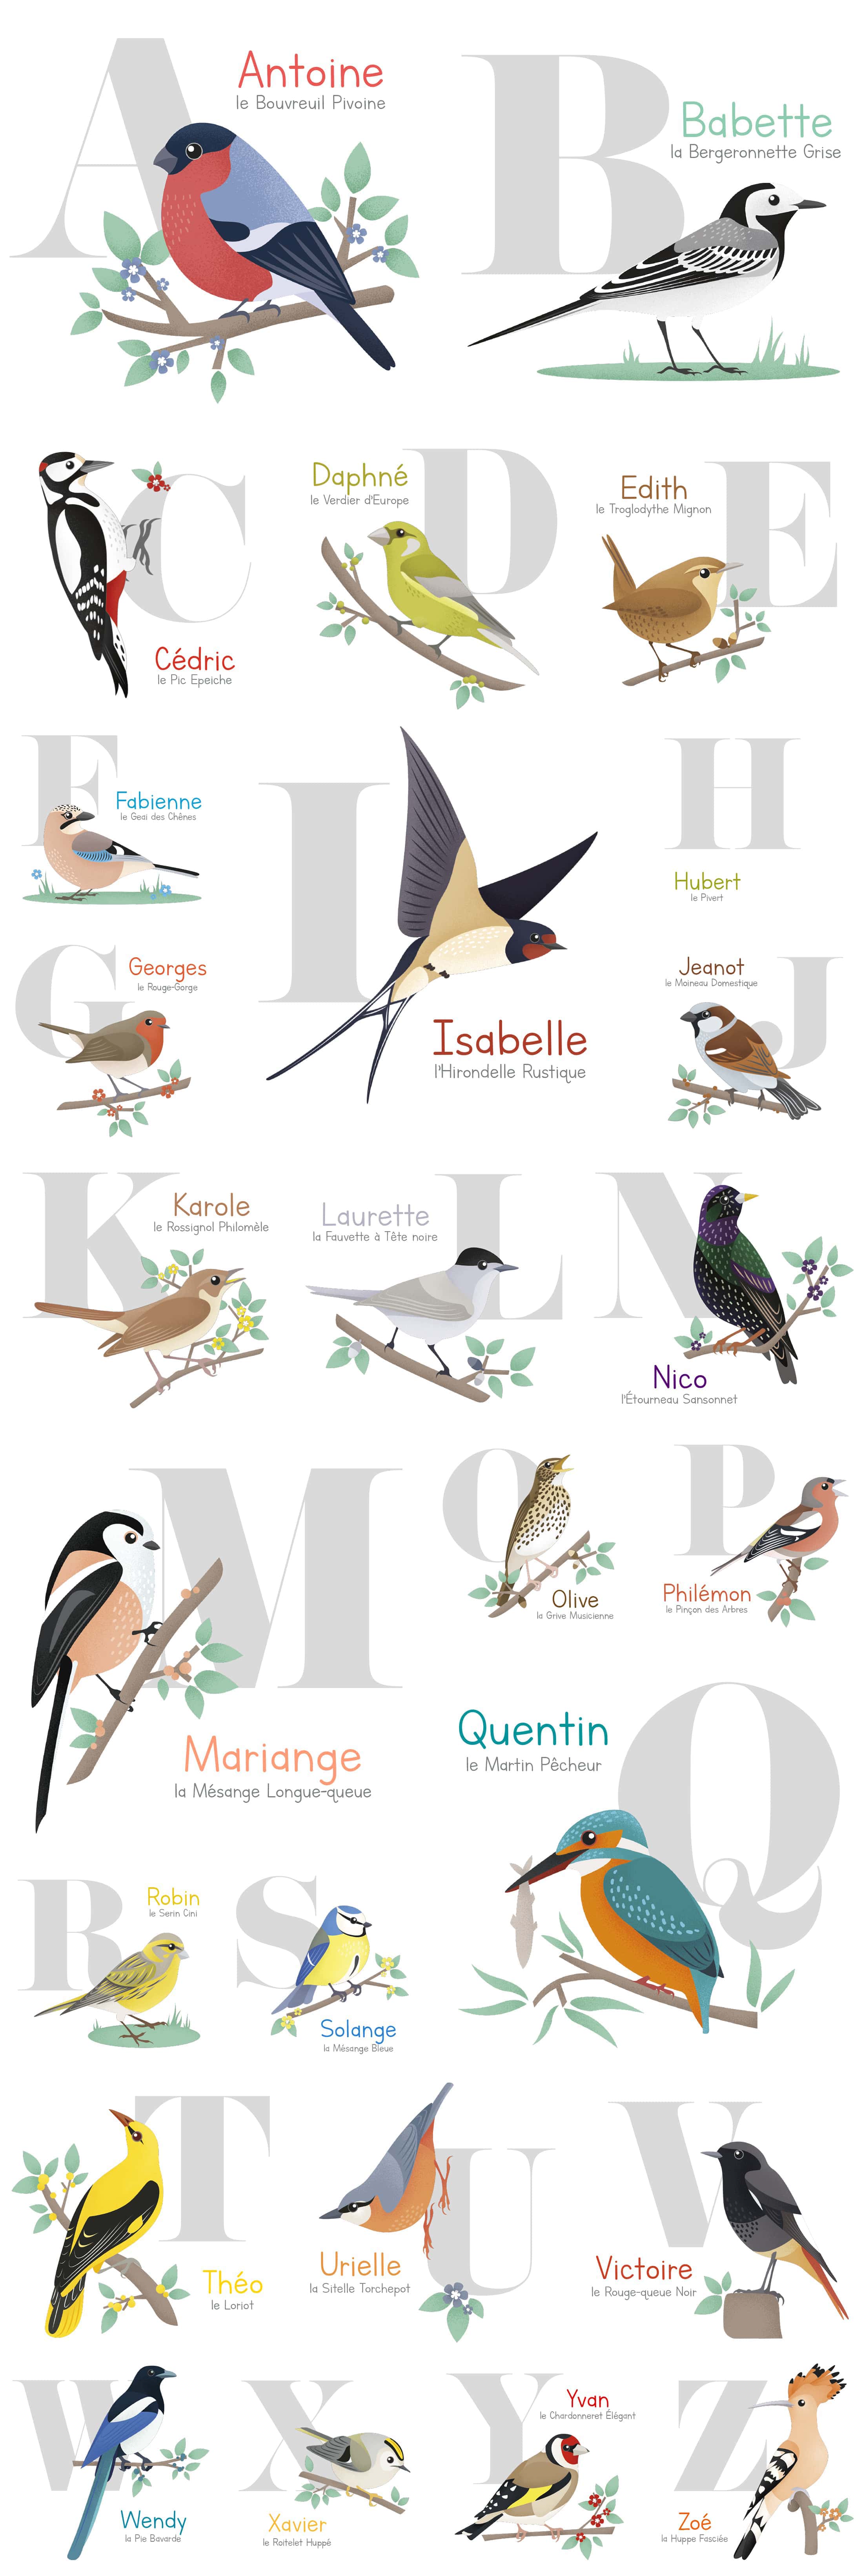 Détails de chaque illustrations d’oiseaux